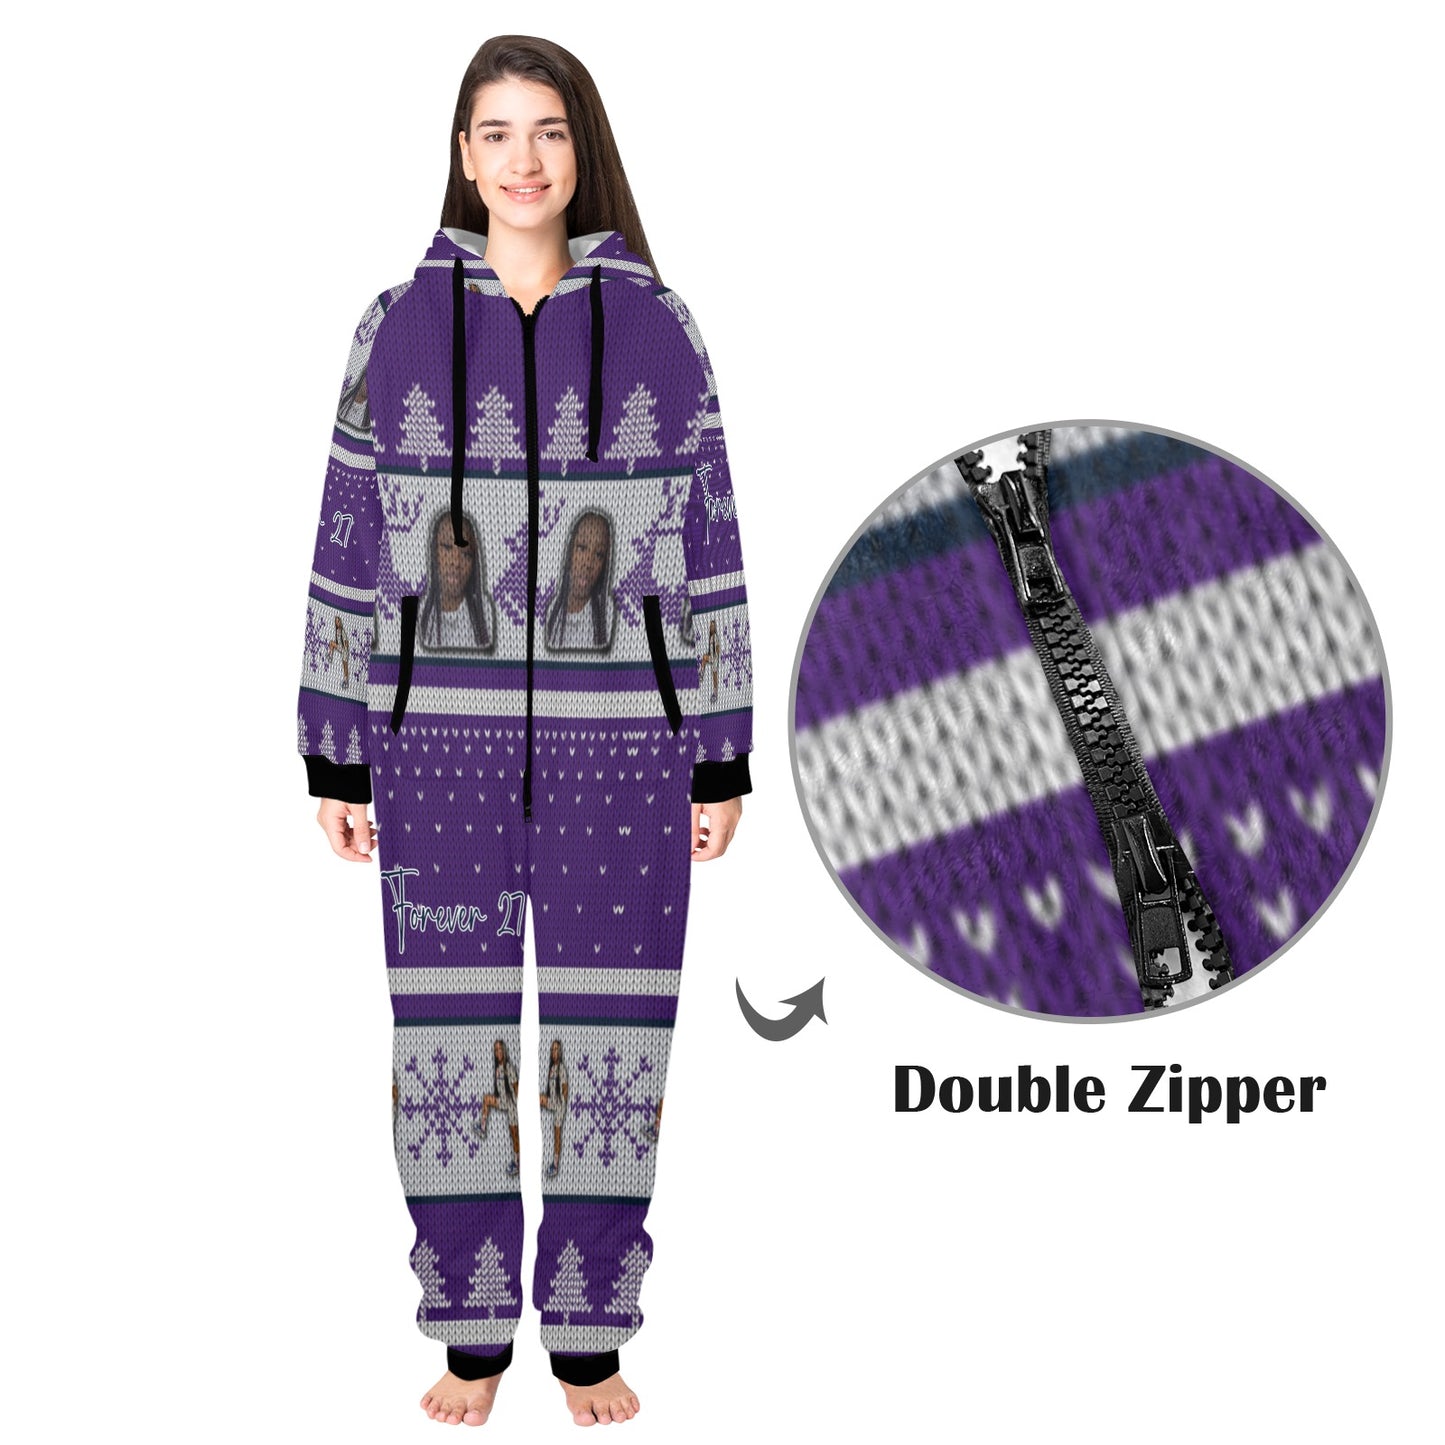 Kayla Unisex One-Piece Zip Up Hooded Pajamas